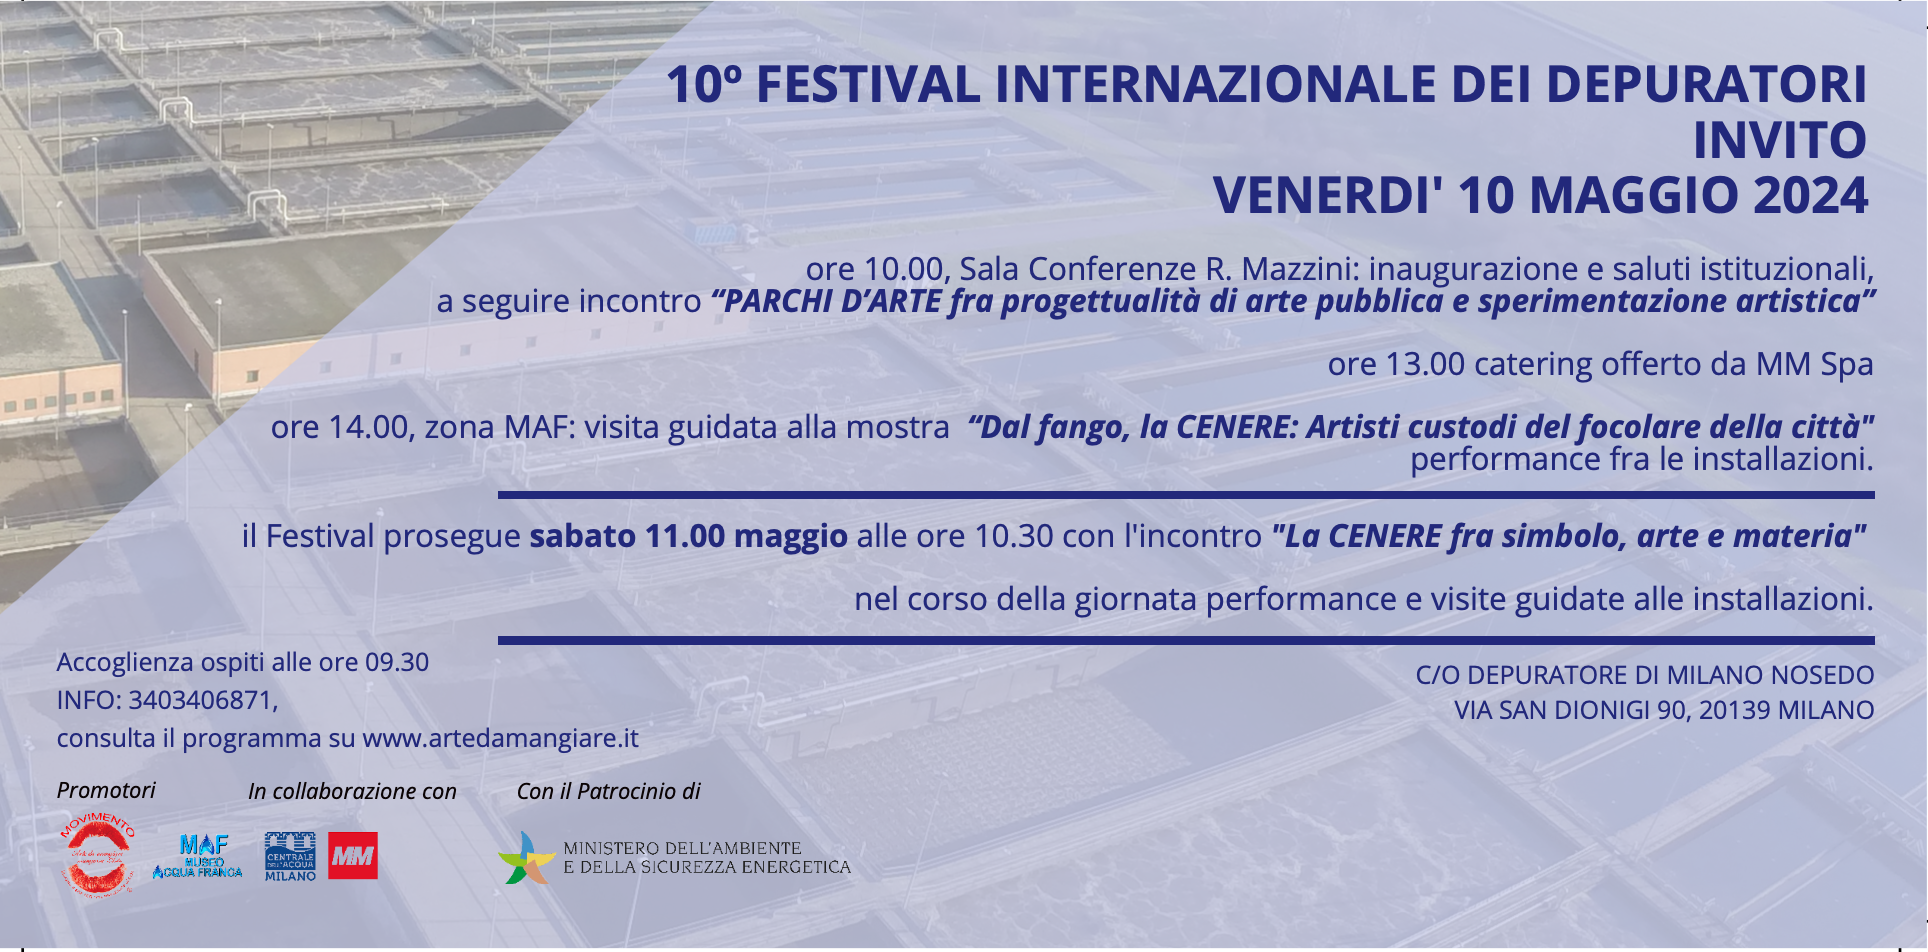 Il 10 e 11 maggio 2024 torna il Festival Internazionale dei Depuratori presso il Depuratore di Milano Nosedo
